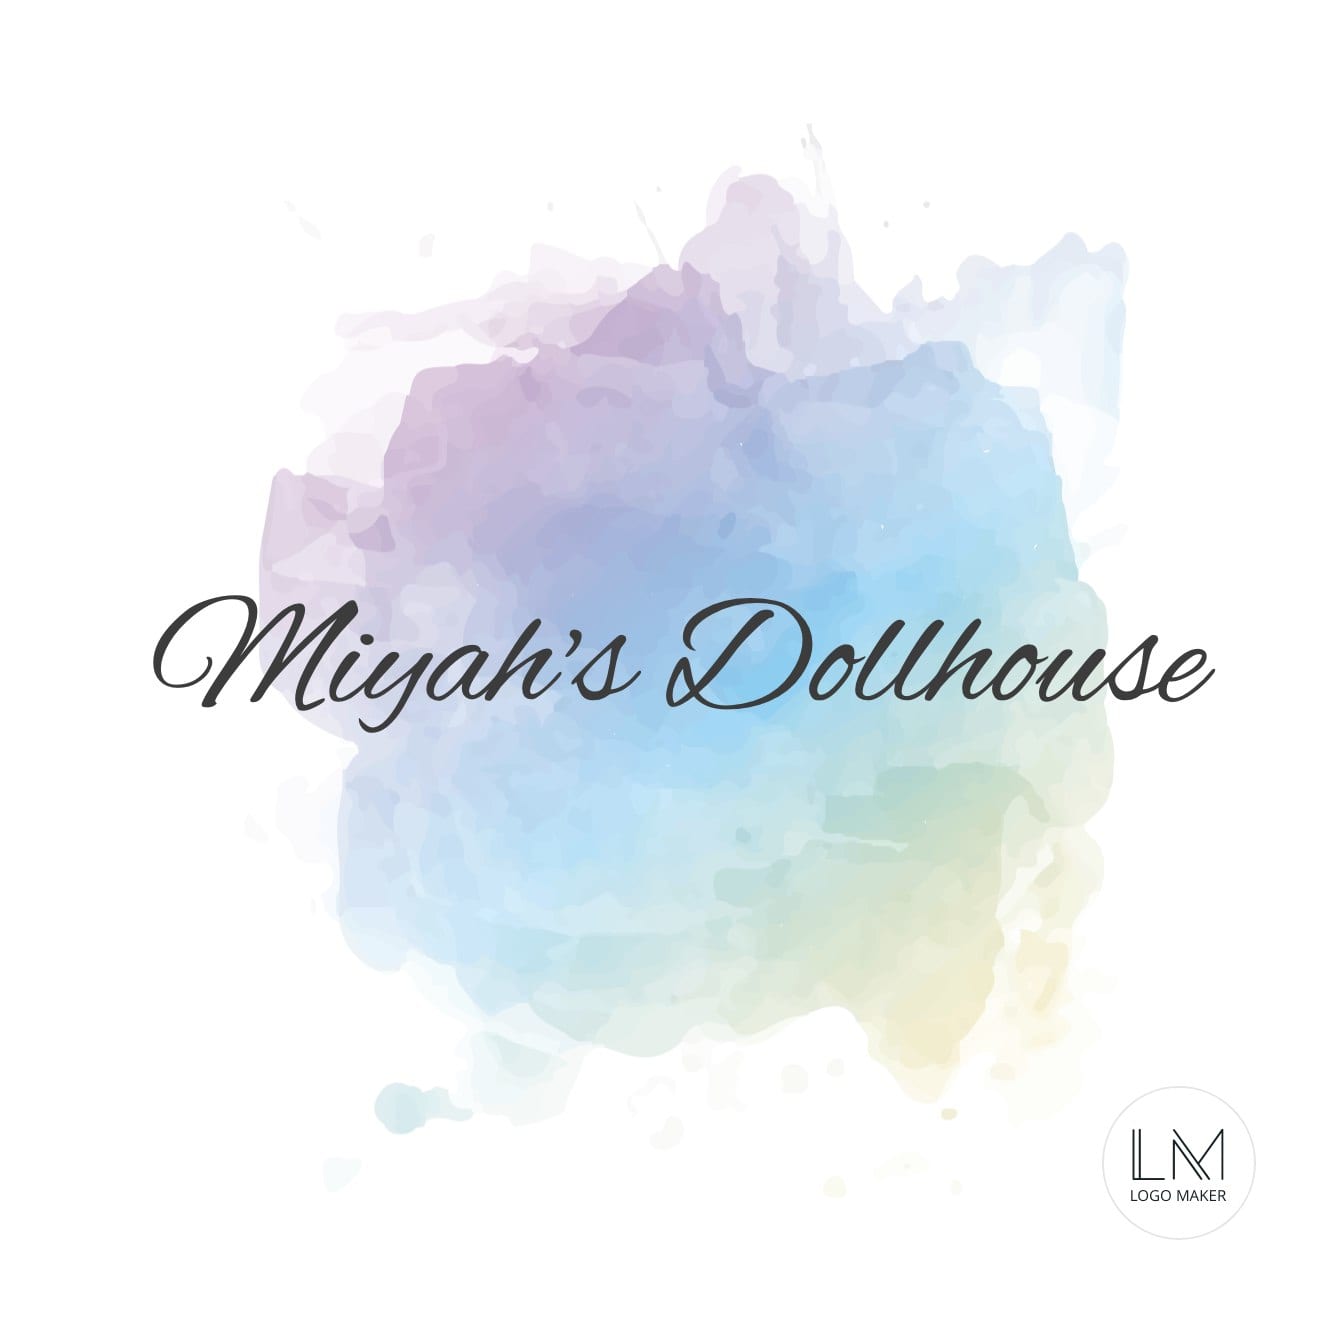 Miyah's Dollhouse